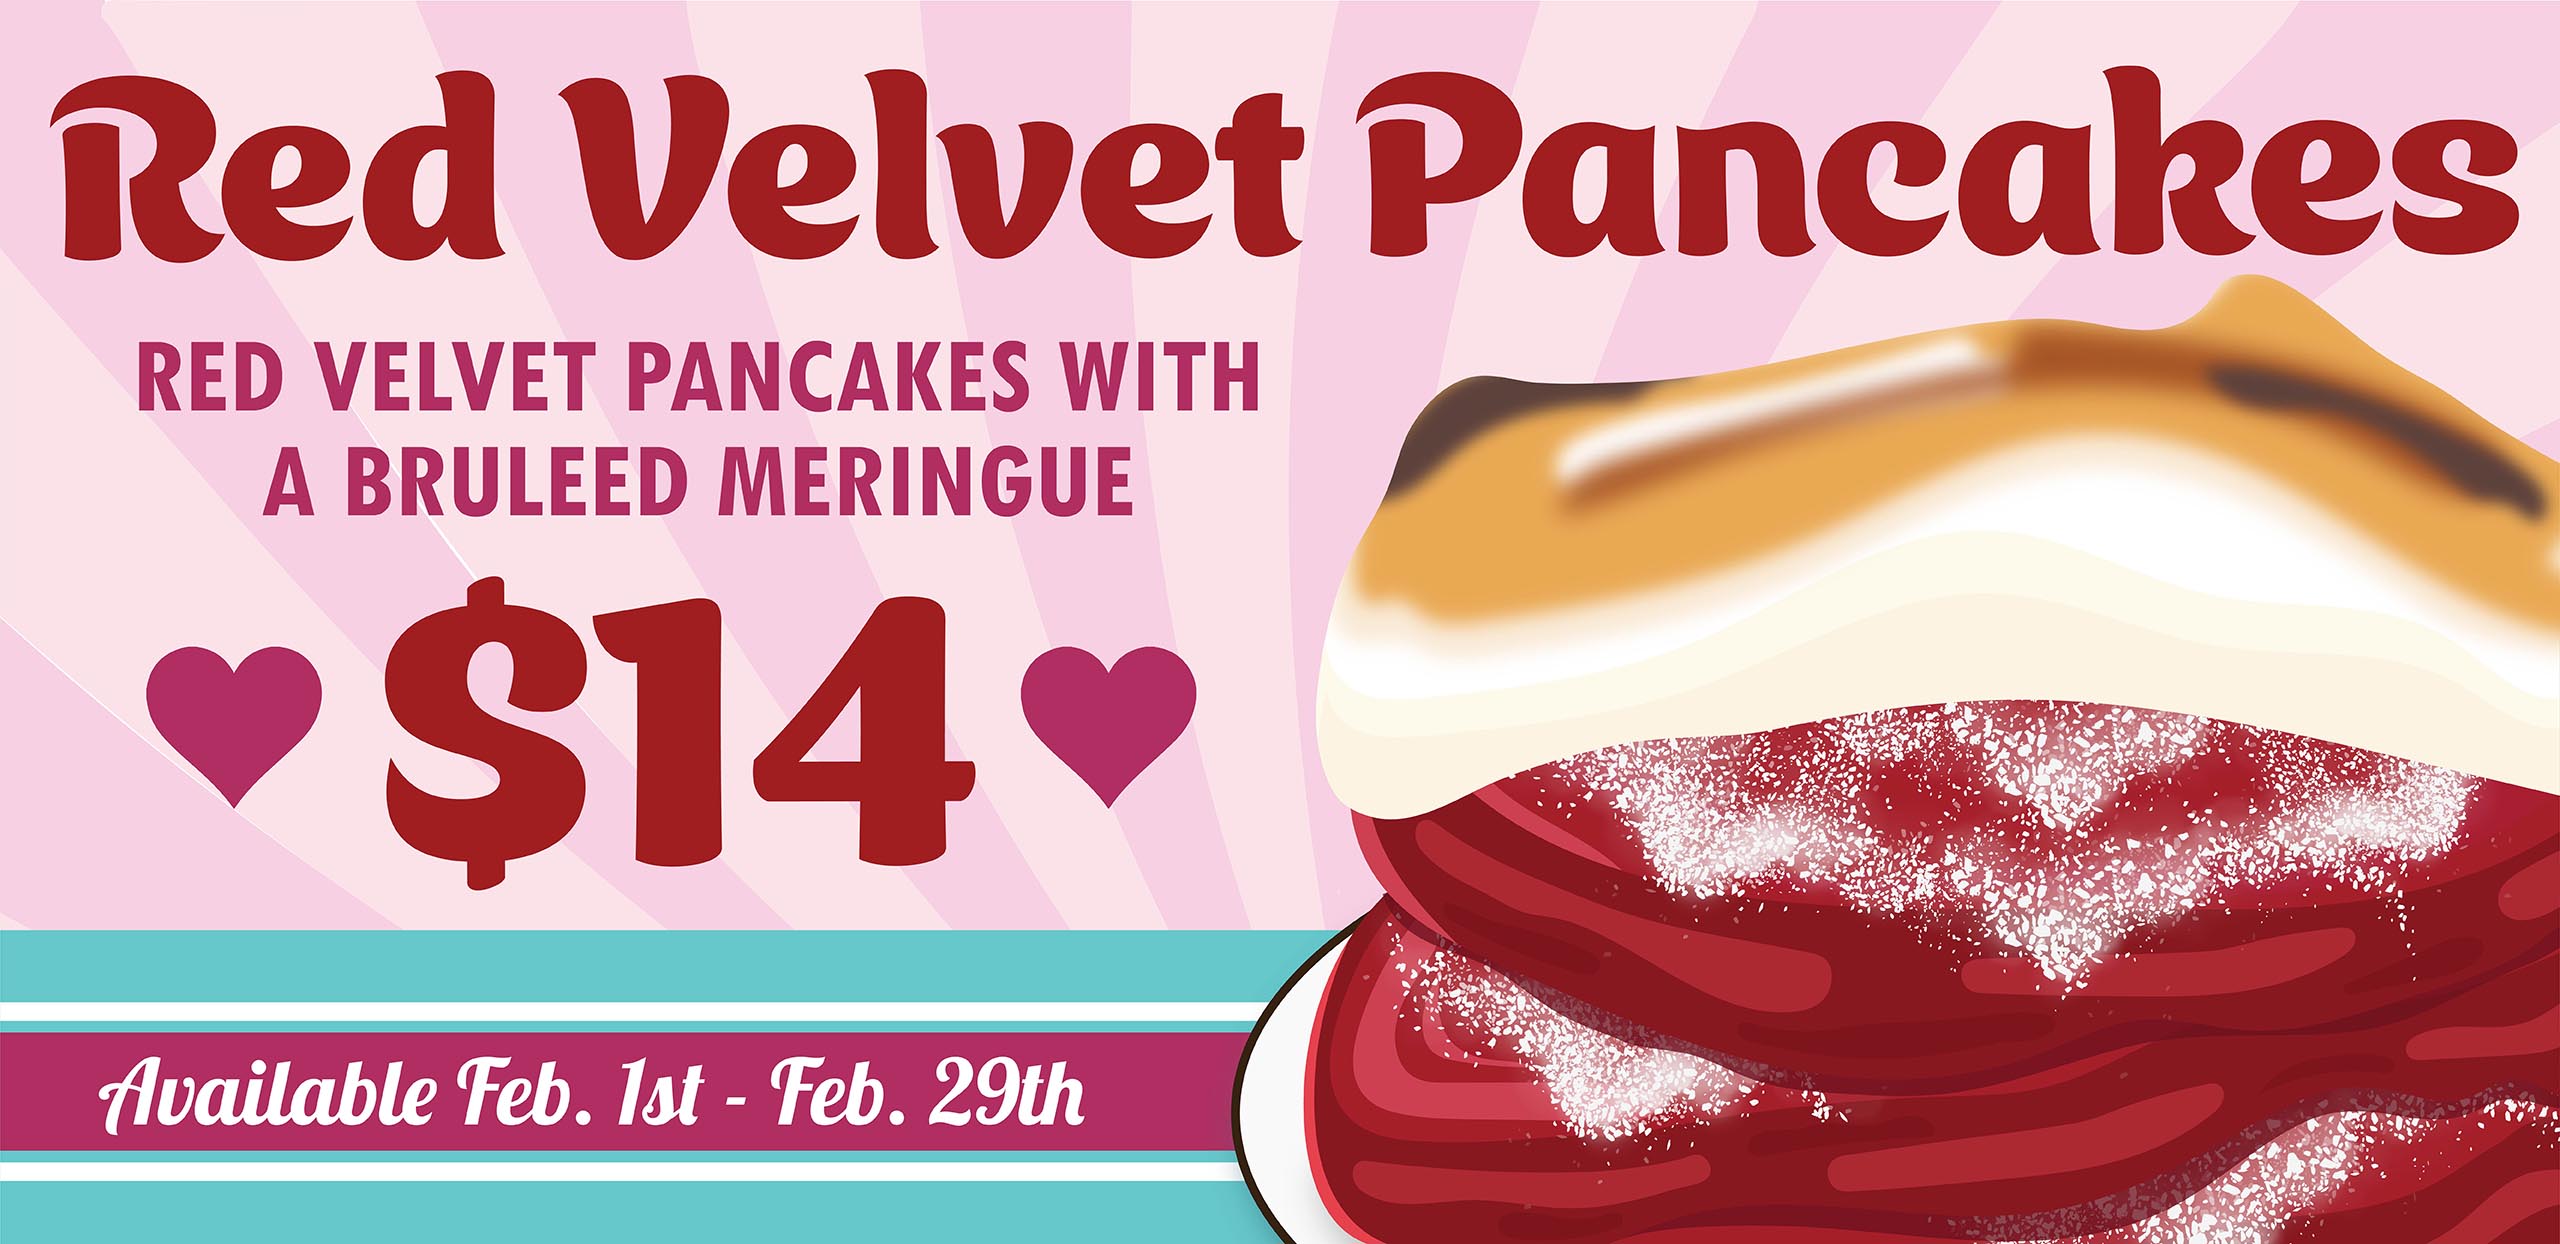 The Pancake Pantry Red Velvet Pancakes